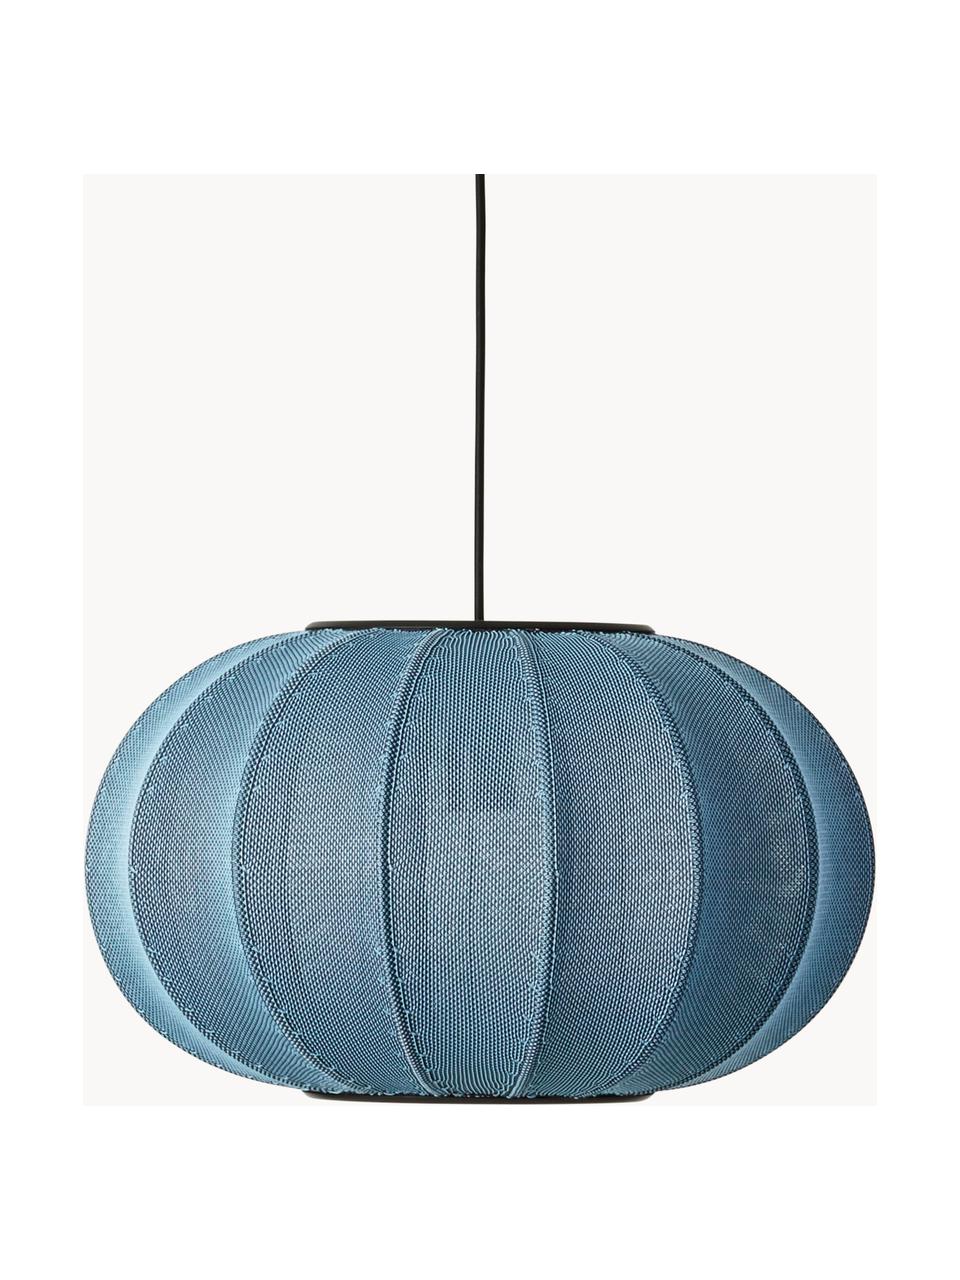 Lámpara de techo Knit-Wit, Pantalla: fibra sintética, Adornos: metal recubierto, Cable: cubierto en tela, Gris azulado, Ø 45 x Al 26 cm